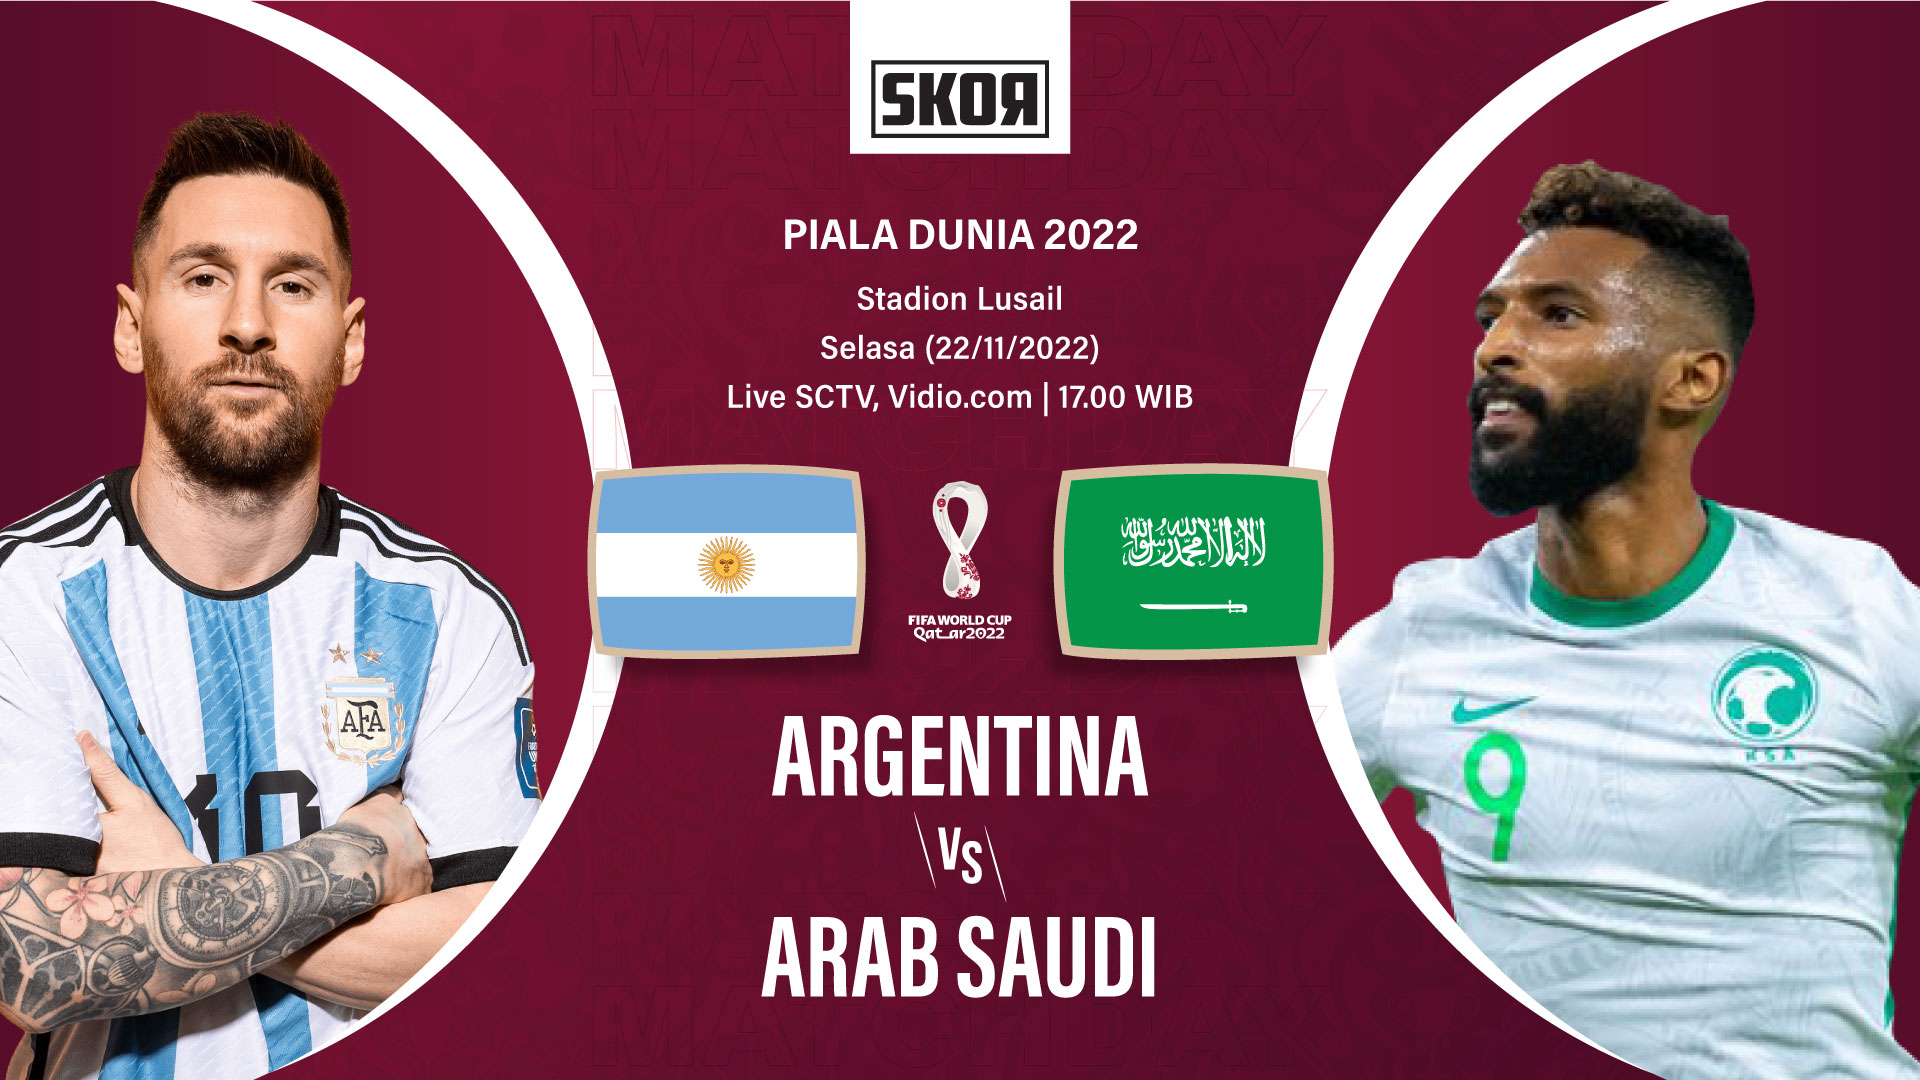 VIDEO: Kejutan Piala Dunia 2022, Arab Saudi Tumbangkan Argentina